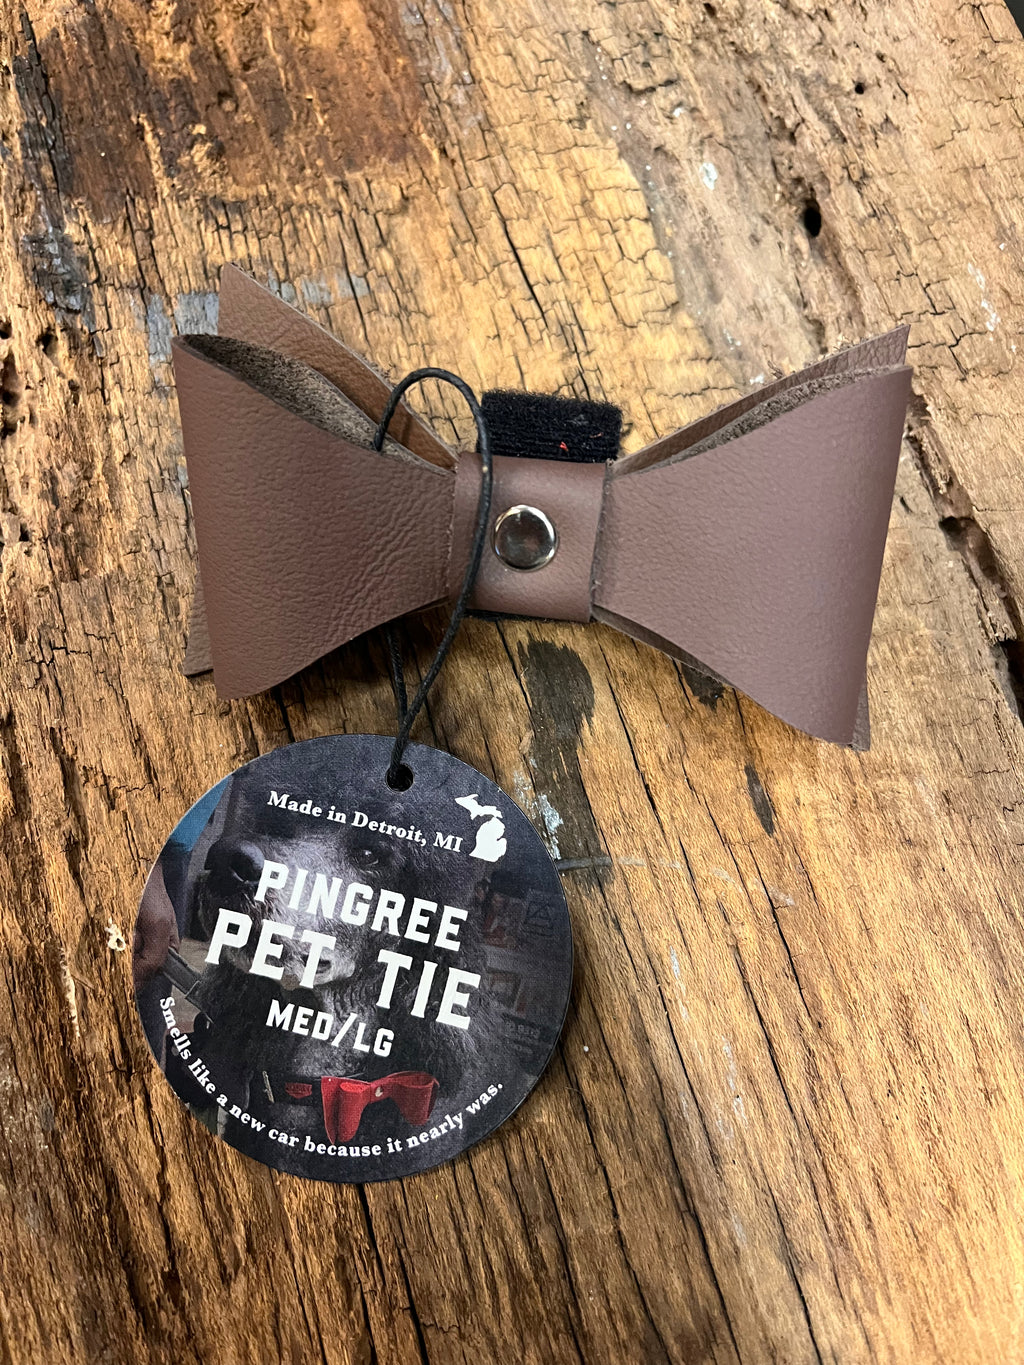 Pingree Detroit Pet Bow Tie - M/L